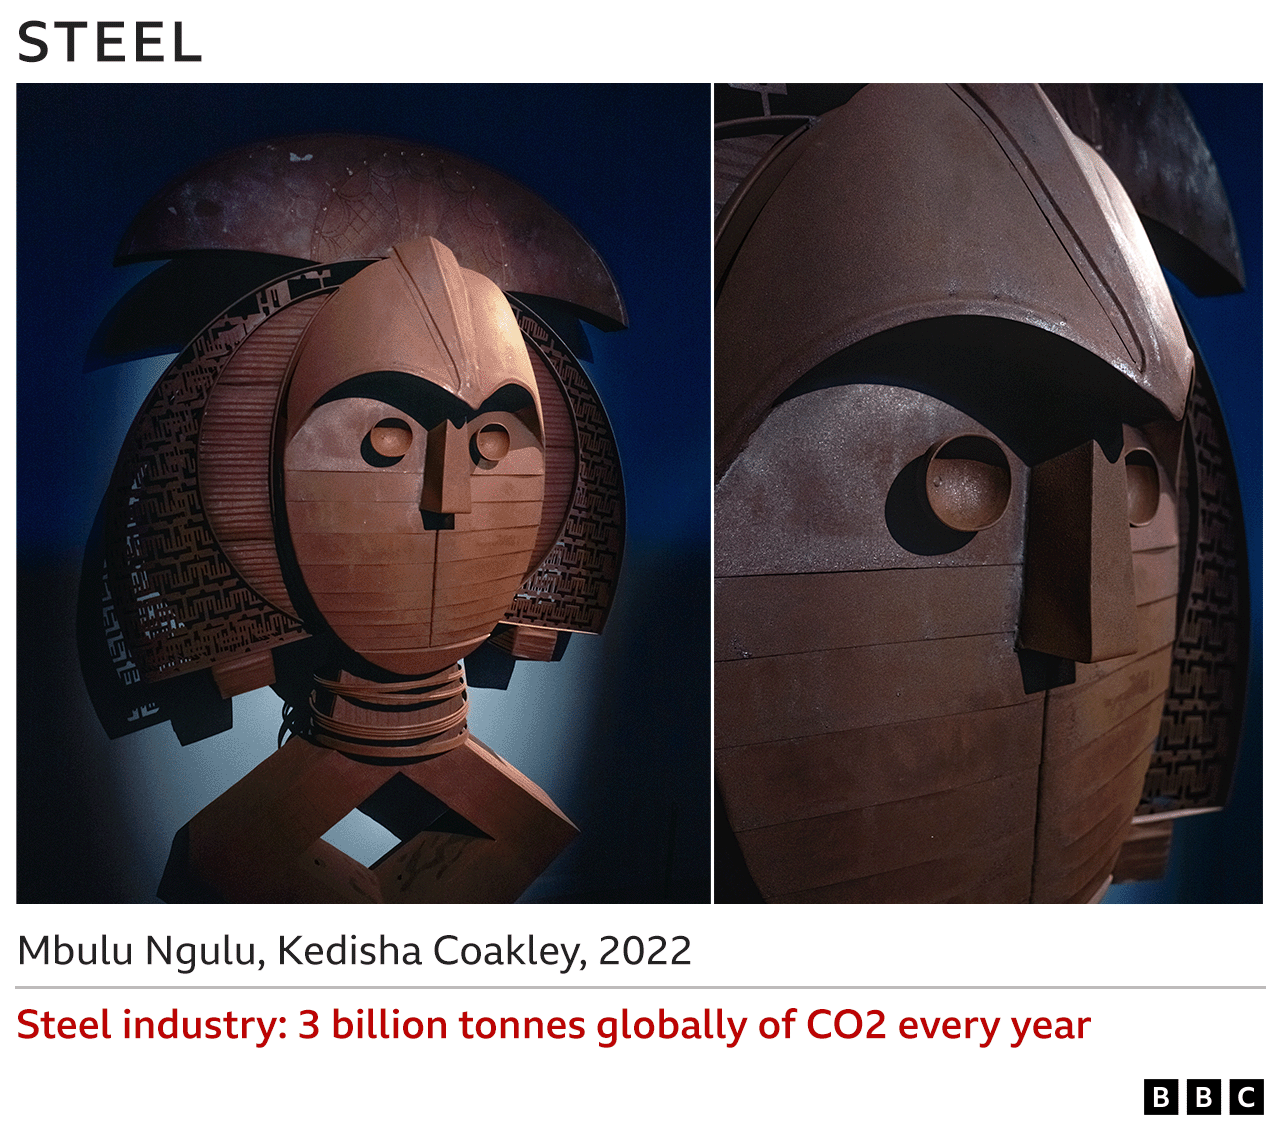 Изображения стальной скульптуры - Мбулу Нгулу, Кедиша Коукли, 2022 г. - Сталелитейная промышленность ежегодно выбрасывает 3 миллиарда тонн CO2